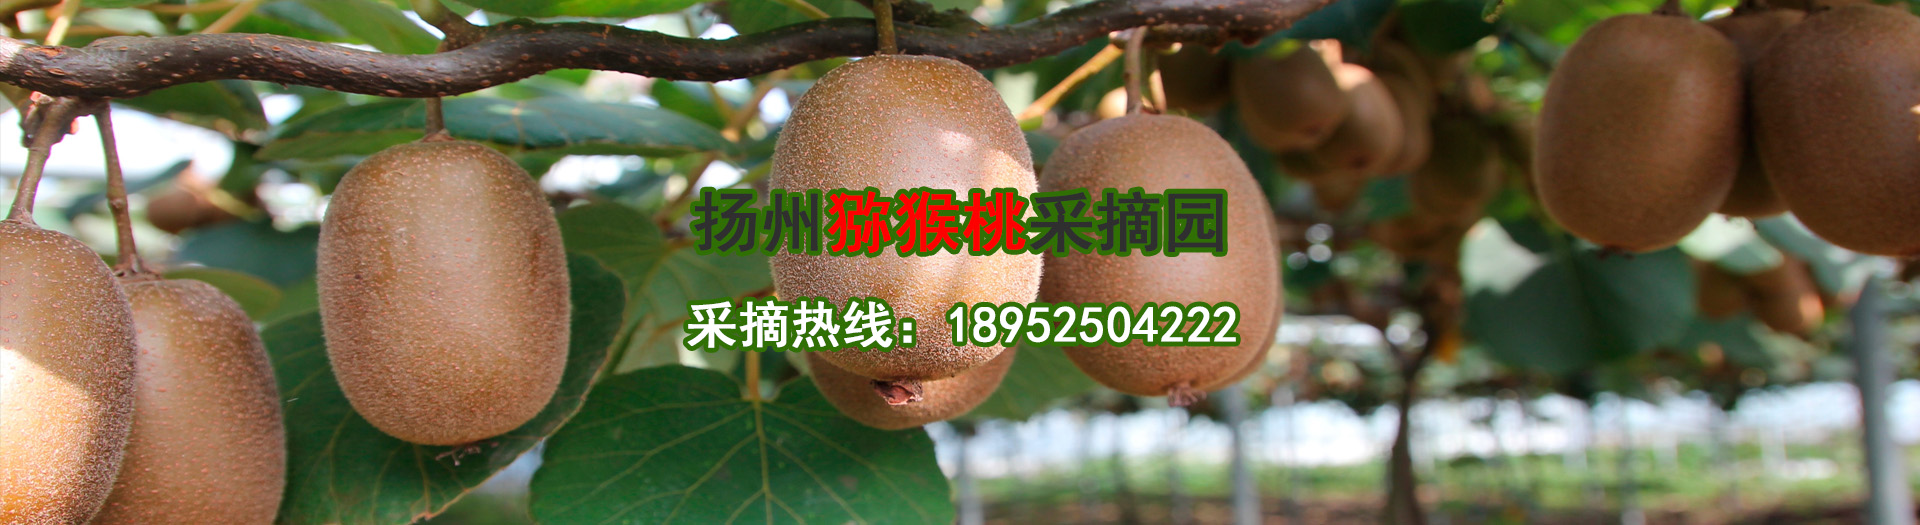 扬州猕猴桃采摘园